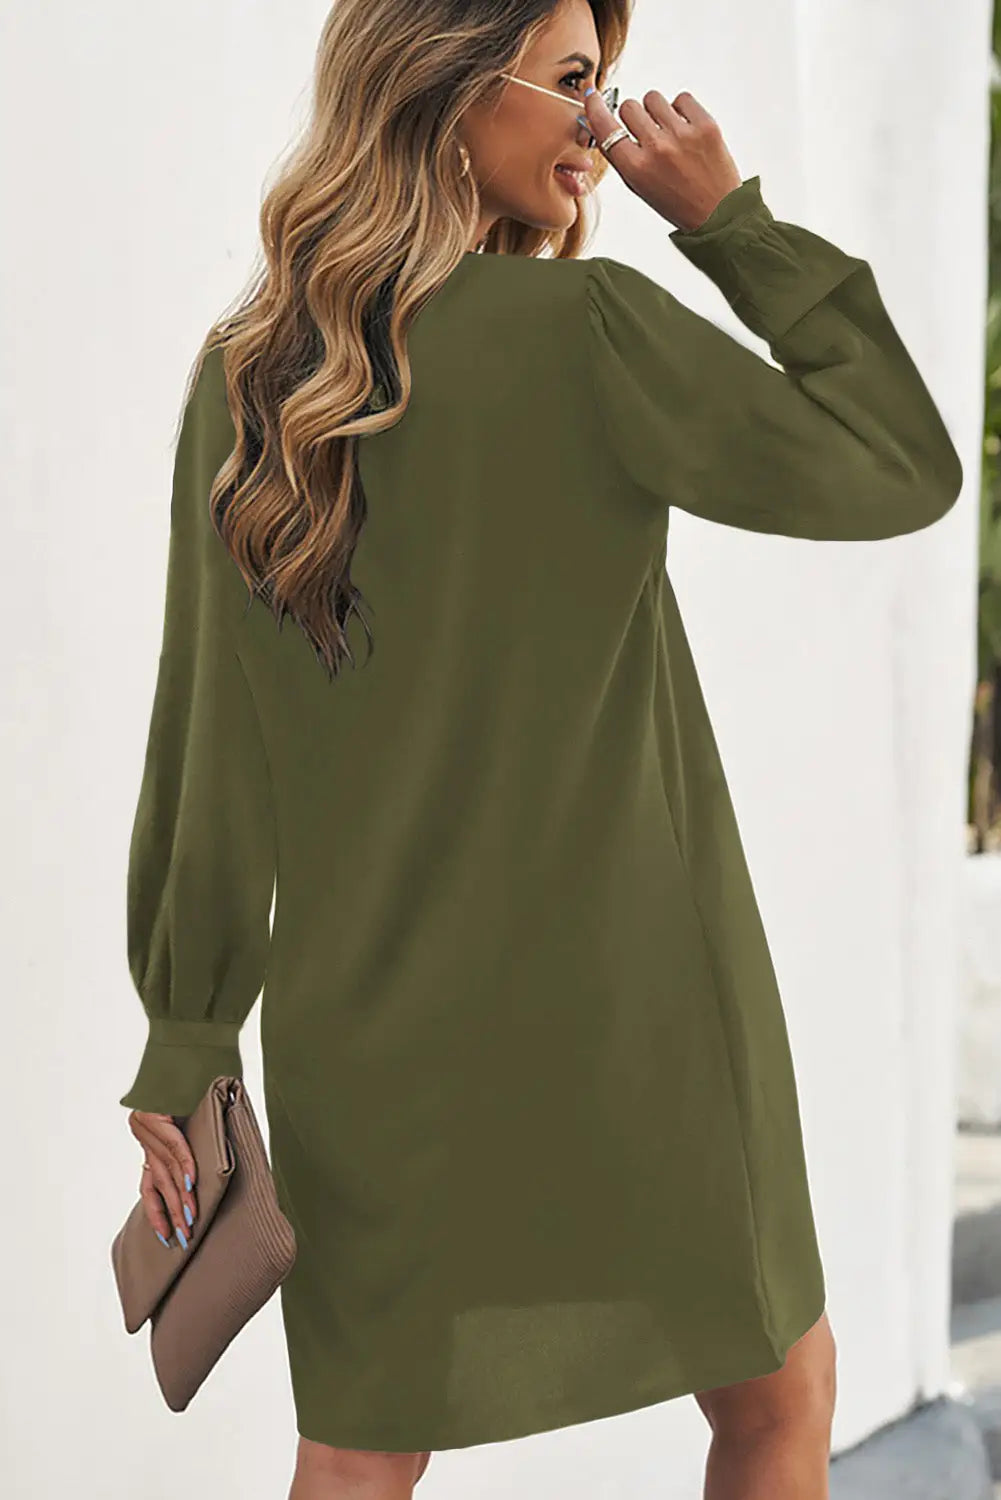 Shirt dress - green split v neck ruffled sleeves - mini dresses